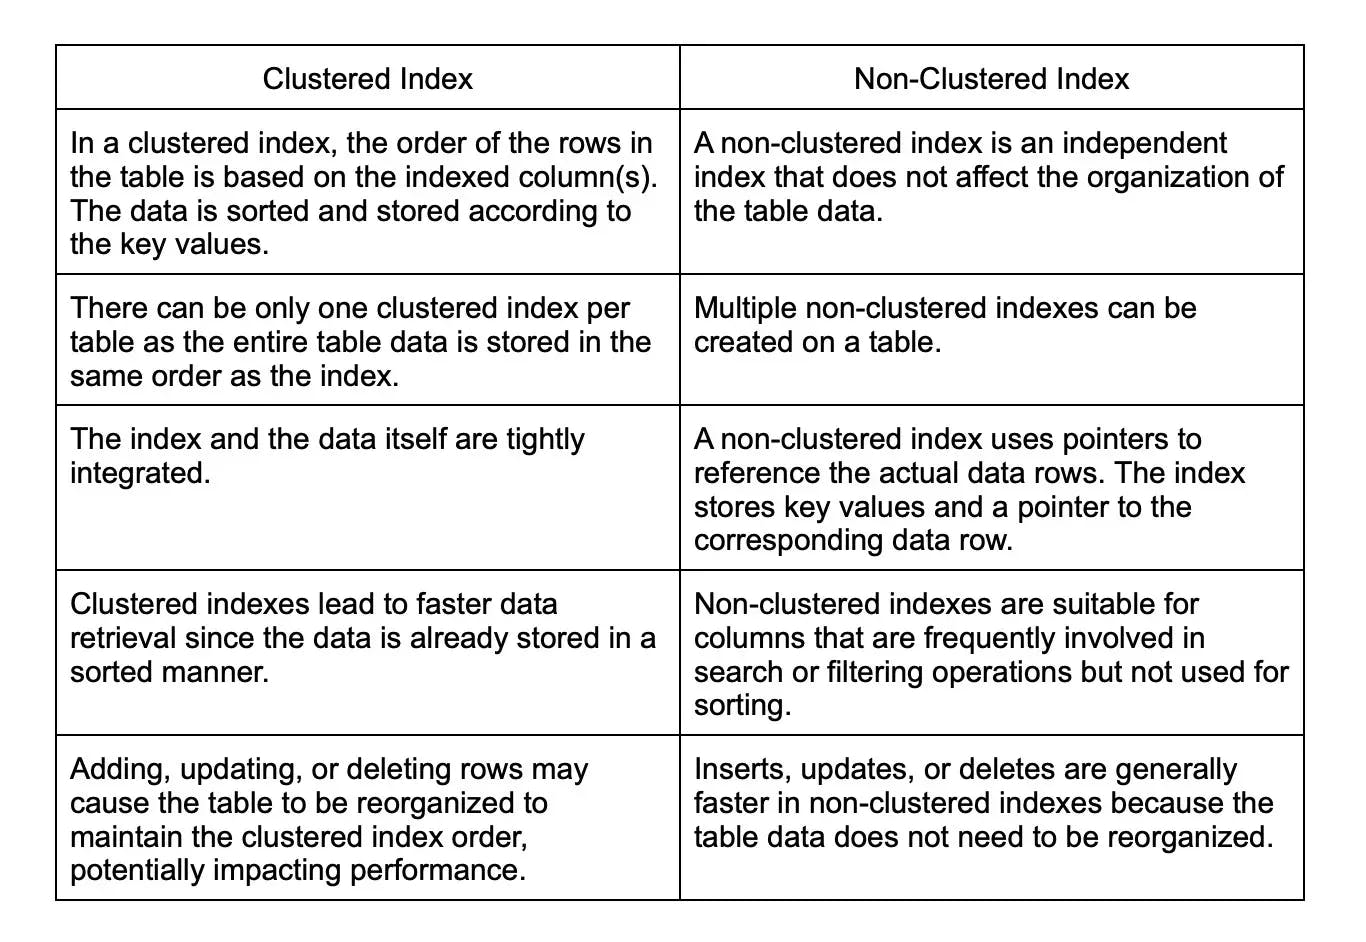 clustered vs non-clustered index.webp